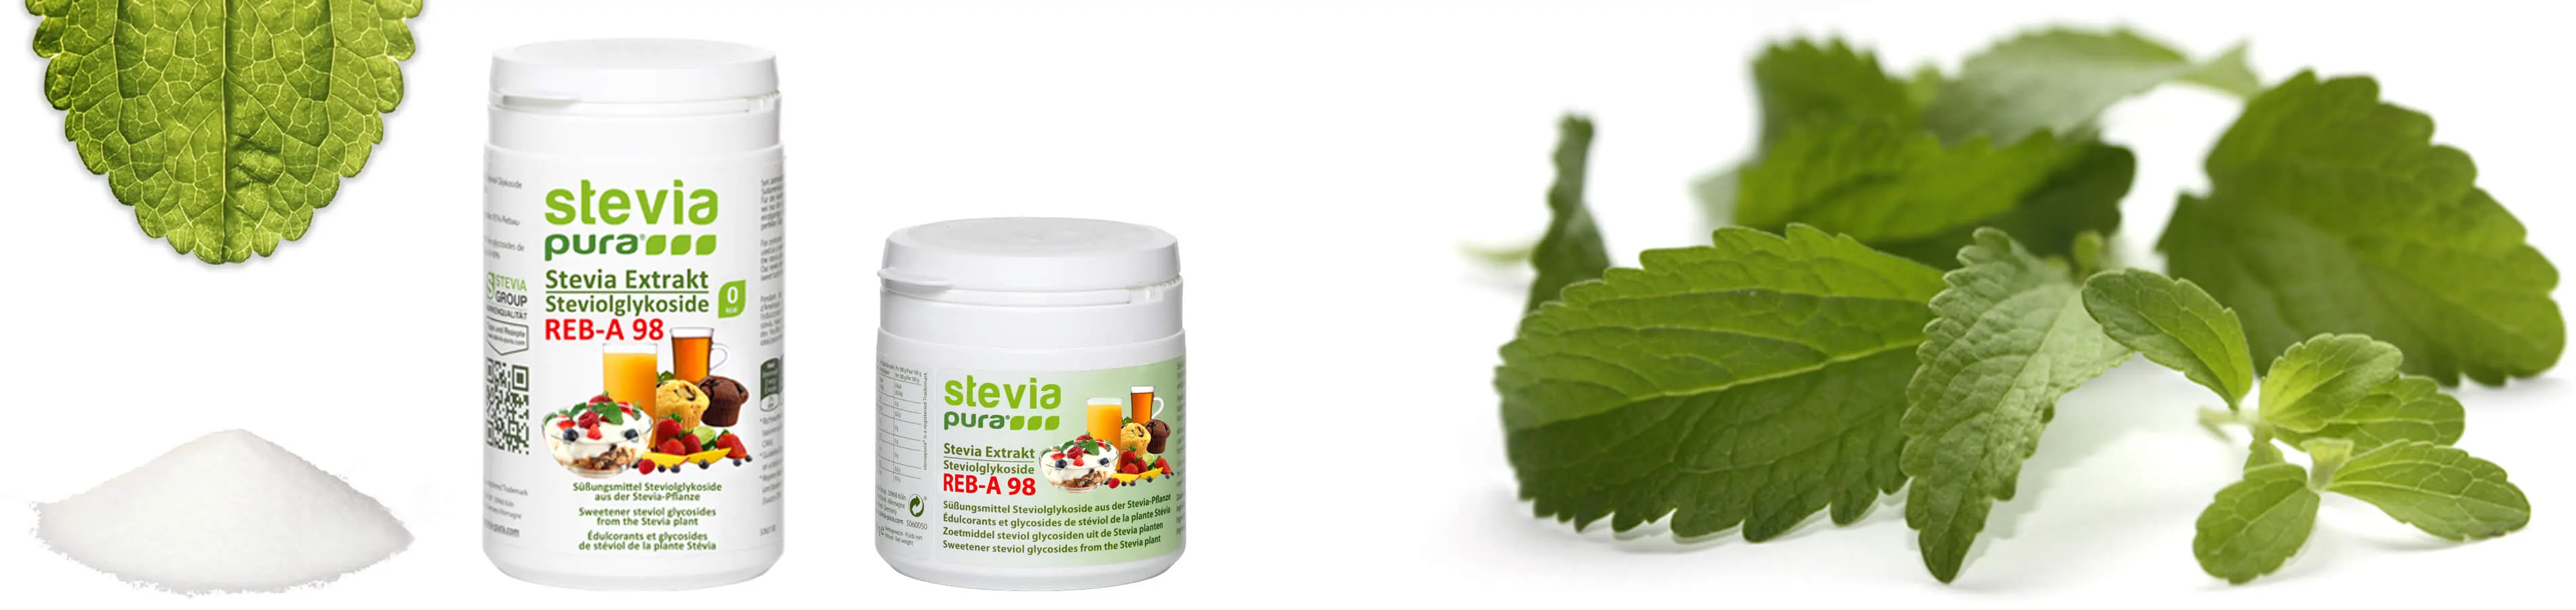 Os Glicosídeos Steviol são os ingredientes doces da planta Stevia. EStevia em pó puro e não adulterado é utilizado como um substituto do açúcar ou Adoçante.